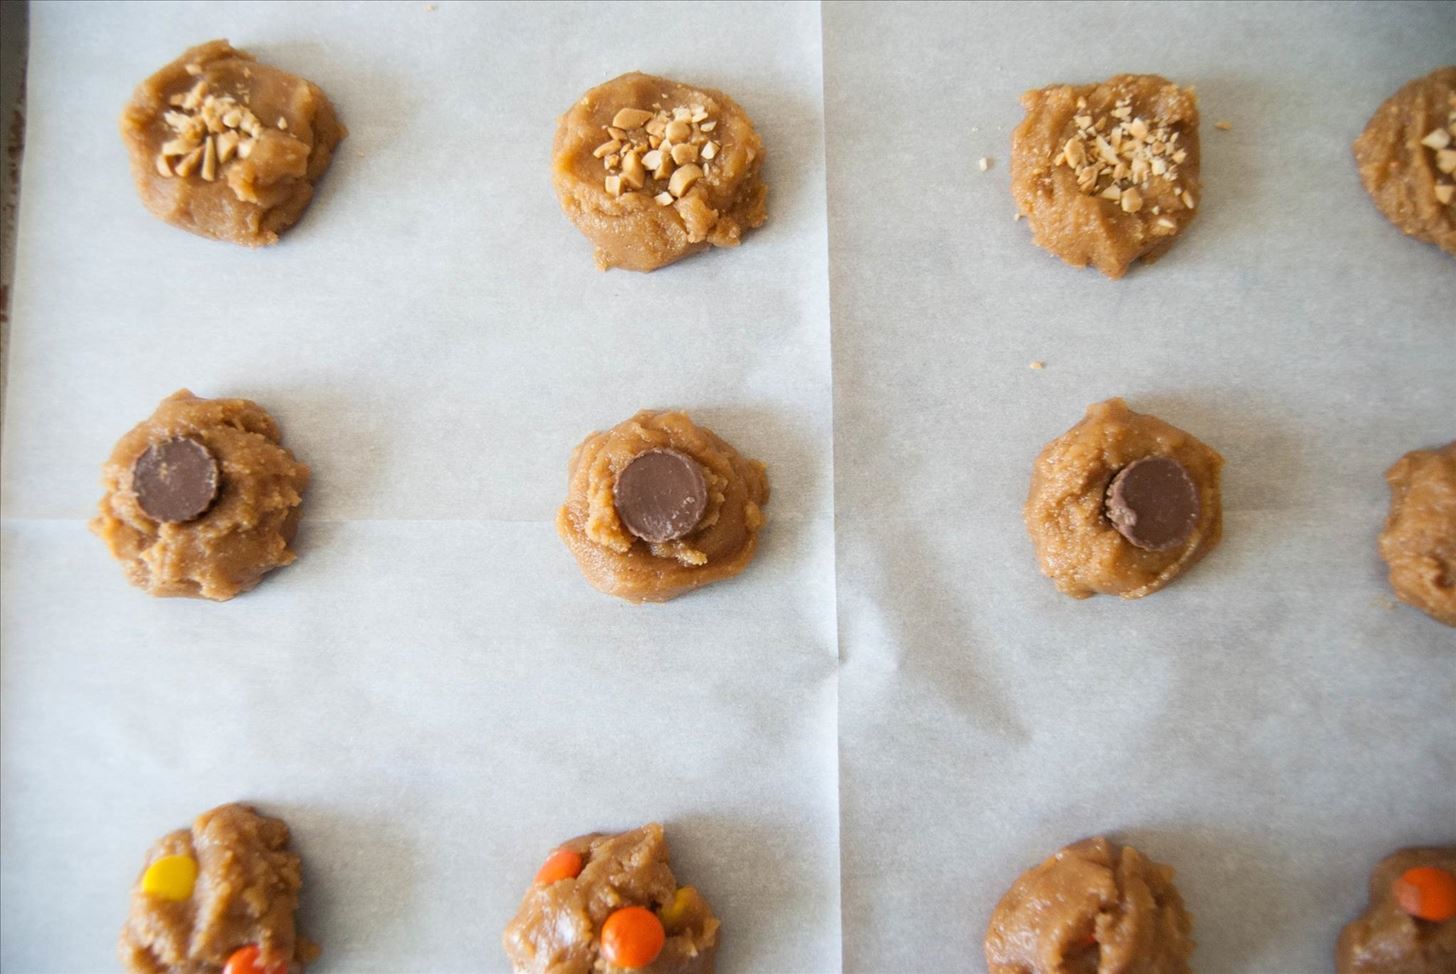 How to Make Flourless, Gluten-Free Peanut Butter Cookies